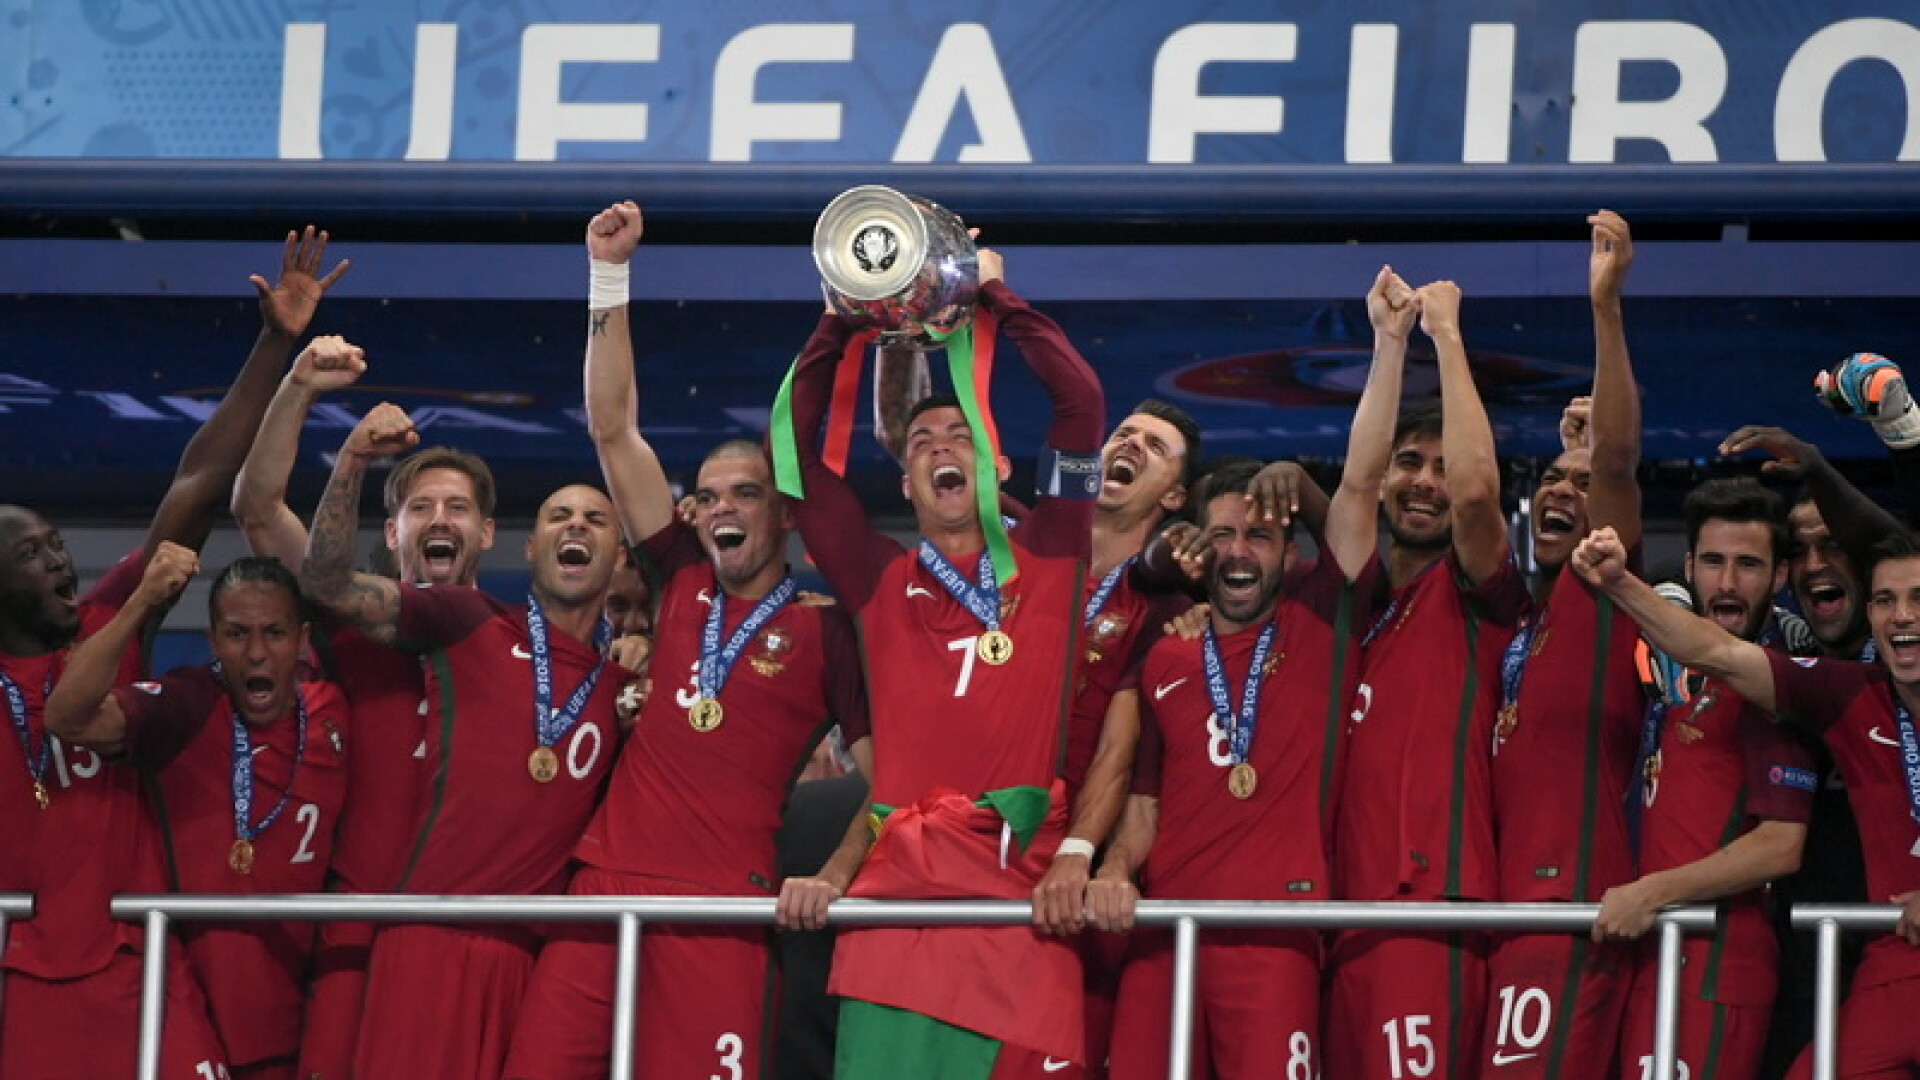 Bucuria portughezilor dupa ce au castigat finala UEFA EURO 2016, iar Portugalia a devenit campioana europeana